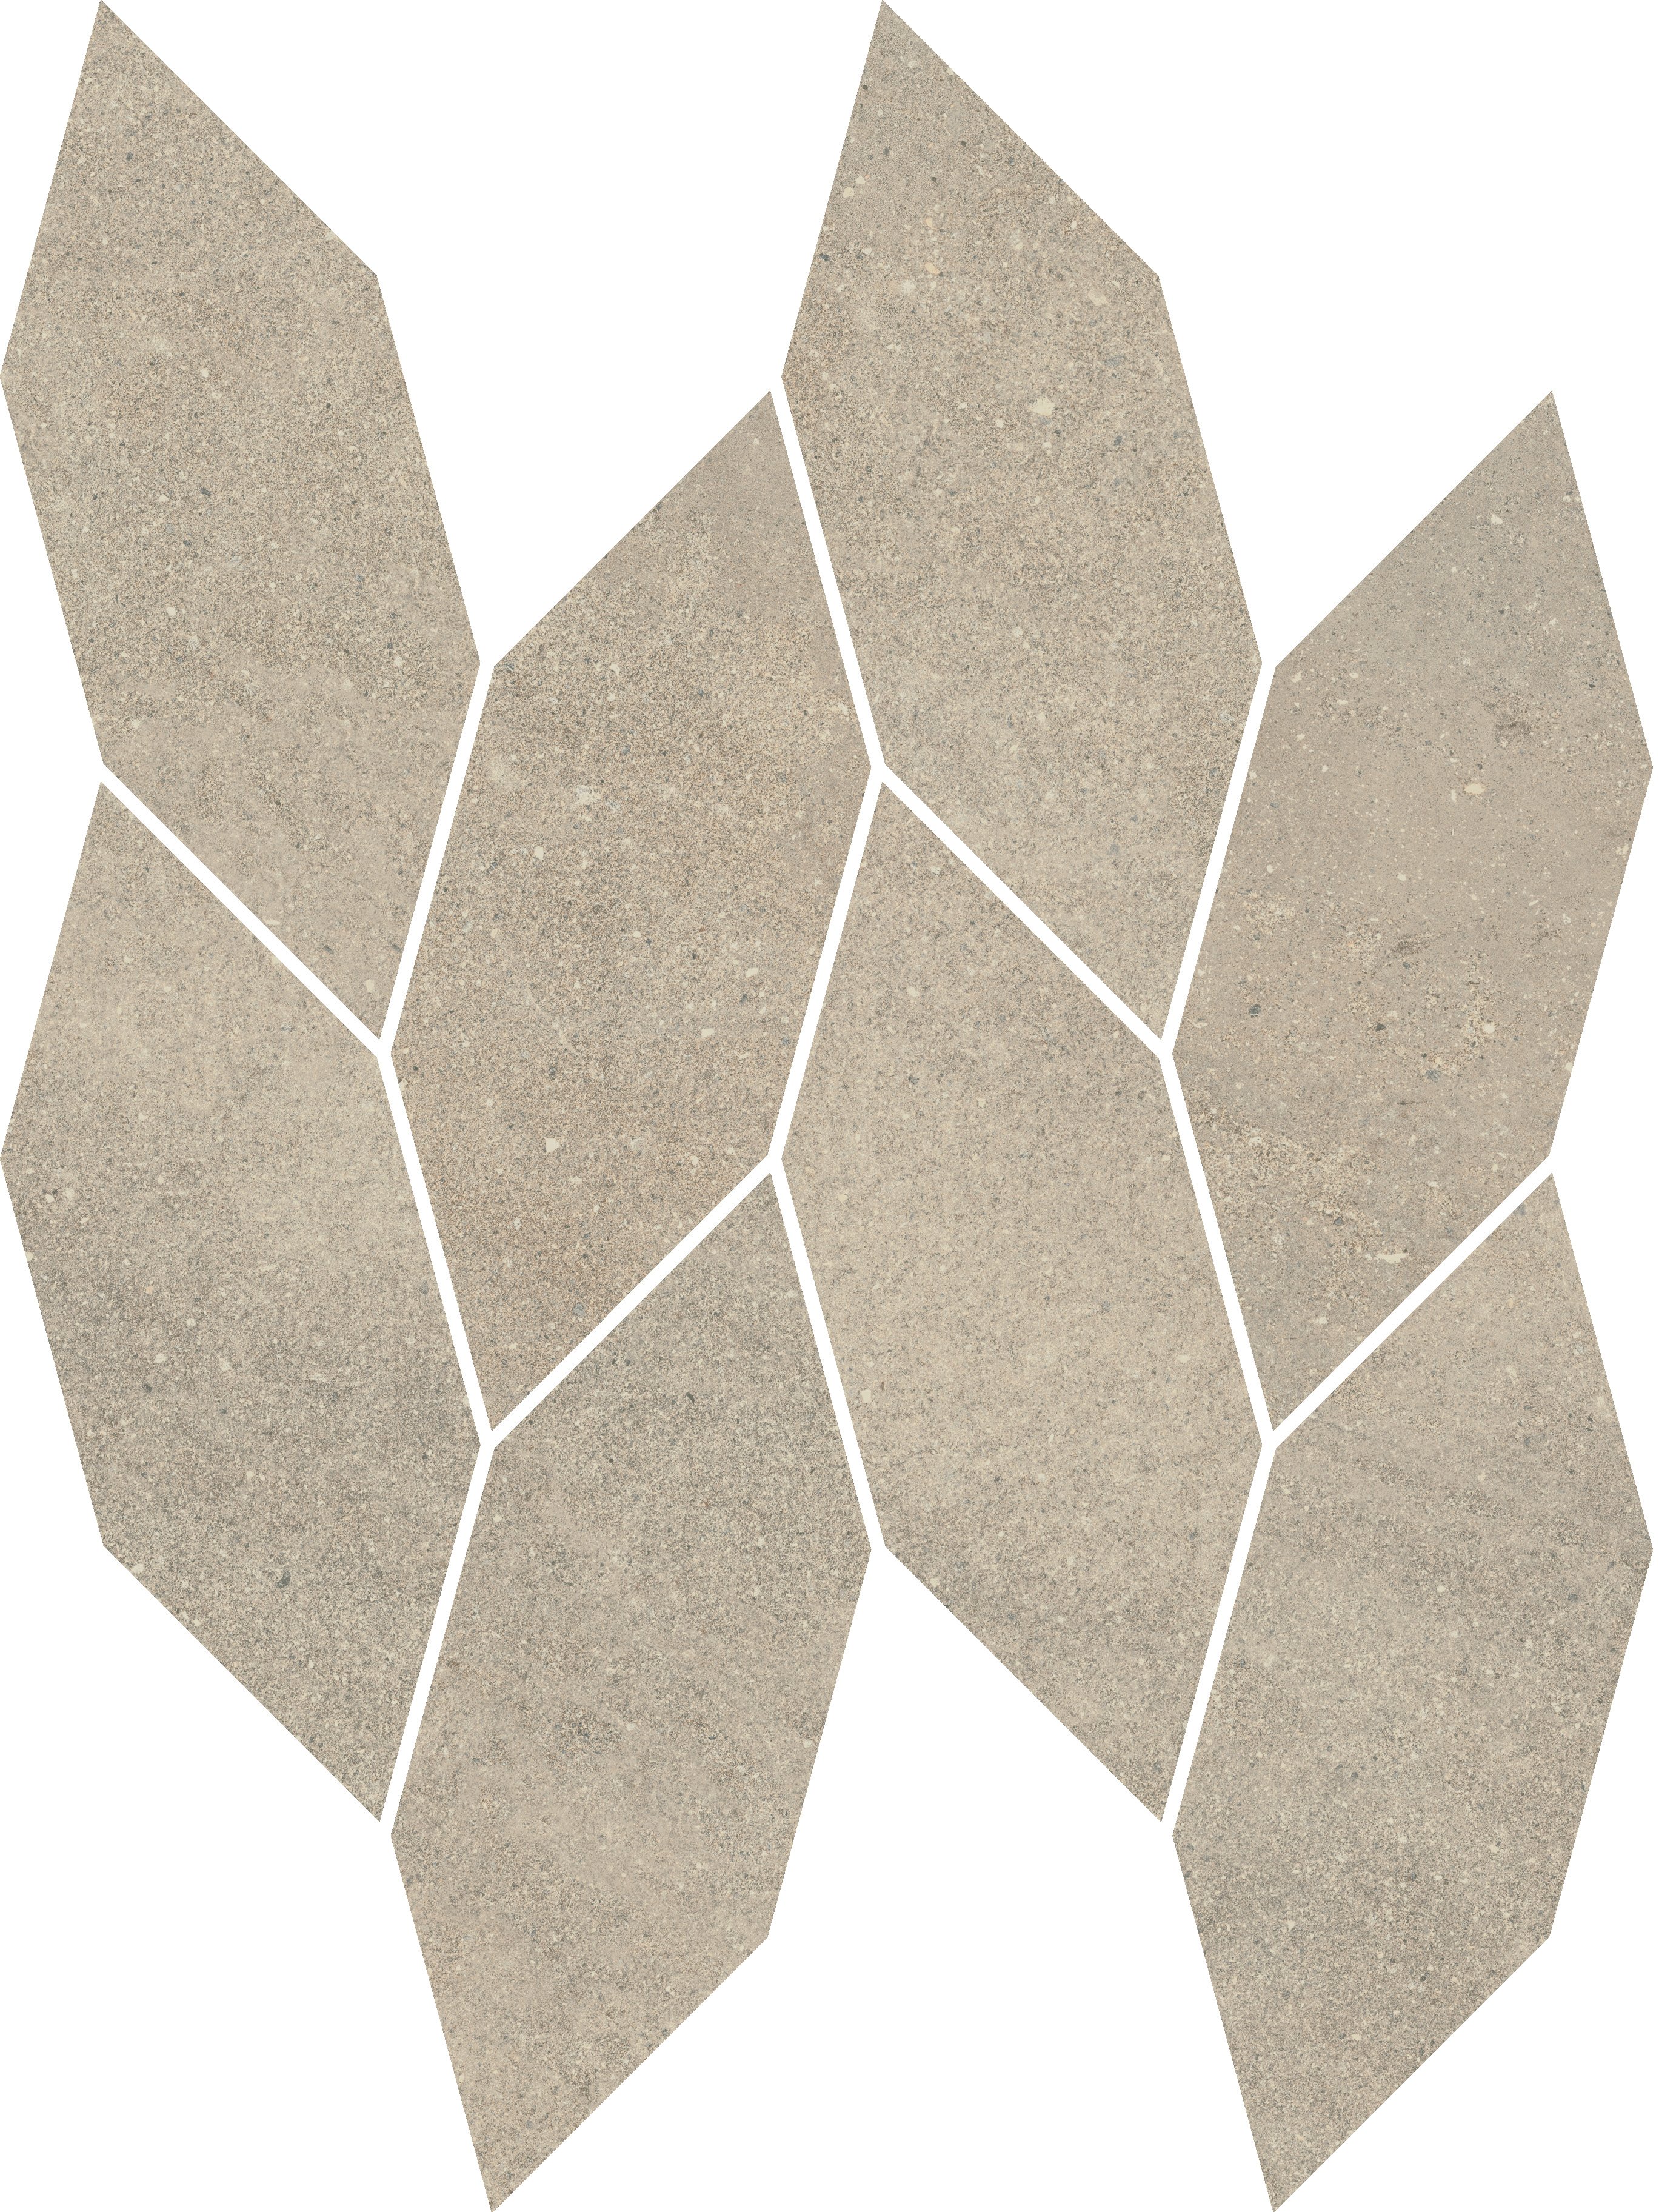 Smoothstone bianco mozaika cięta satyna - obkládačka mozaika 22,3x29,8 béžová 159910